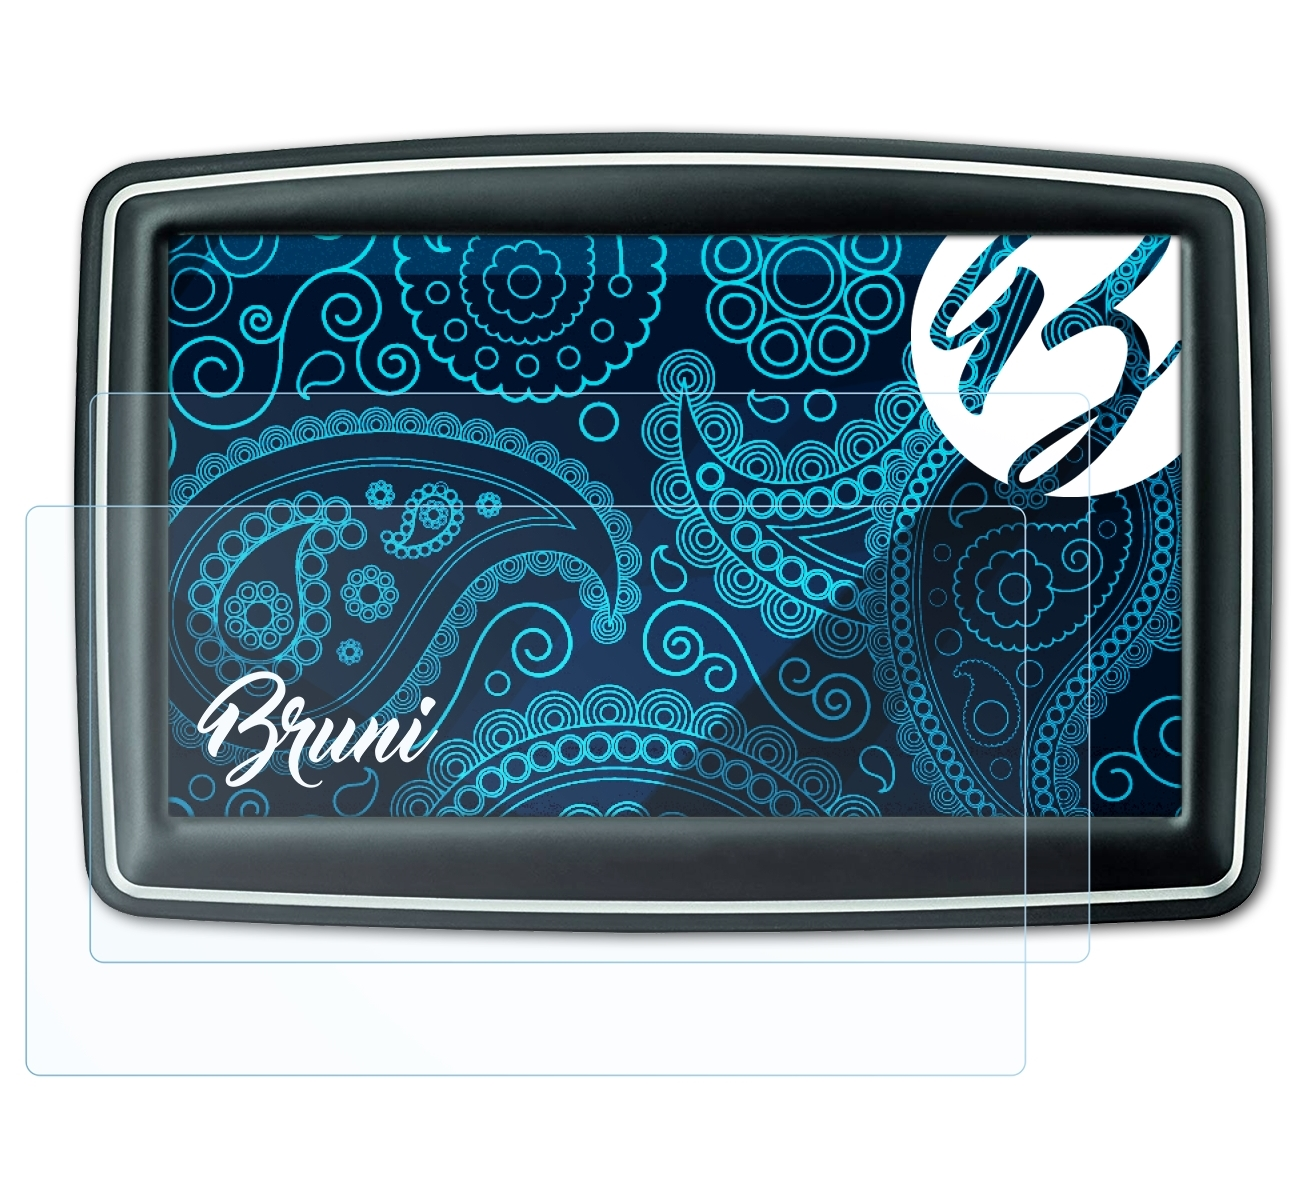 BRUNI 2x Basics-Clear Schutzfolie(für TomTom XXL Classic)